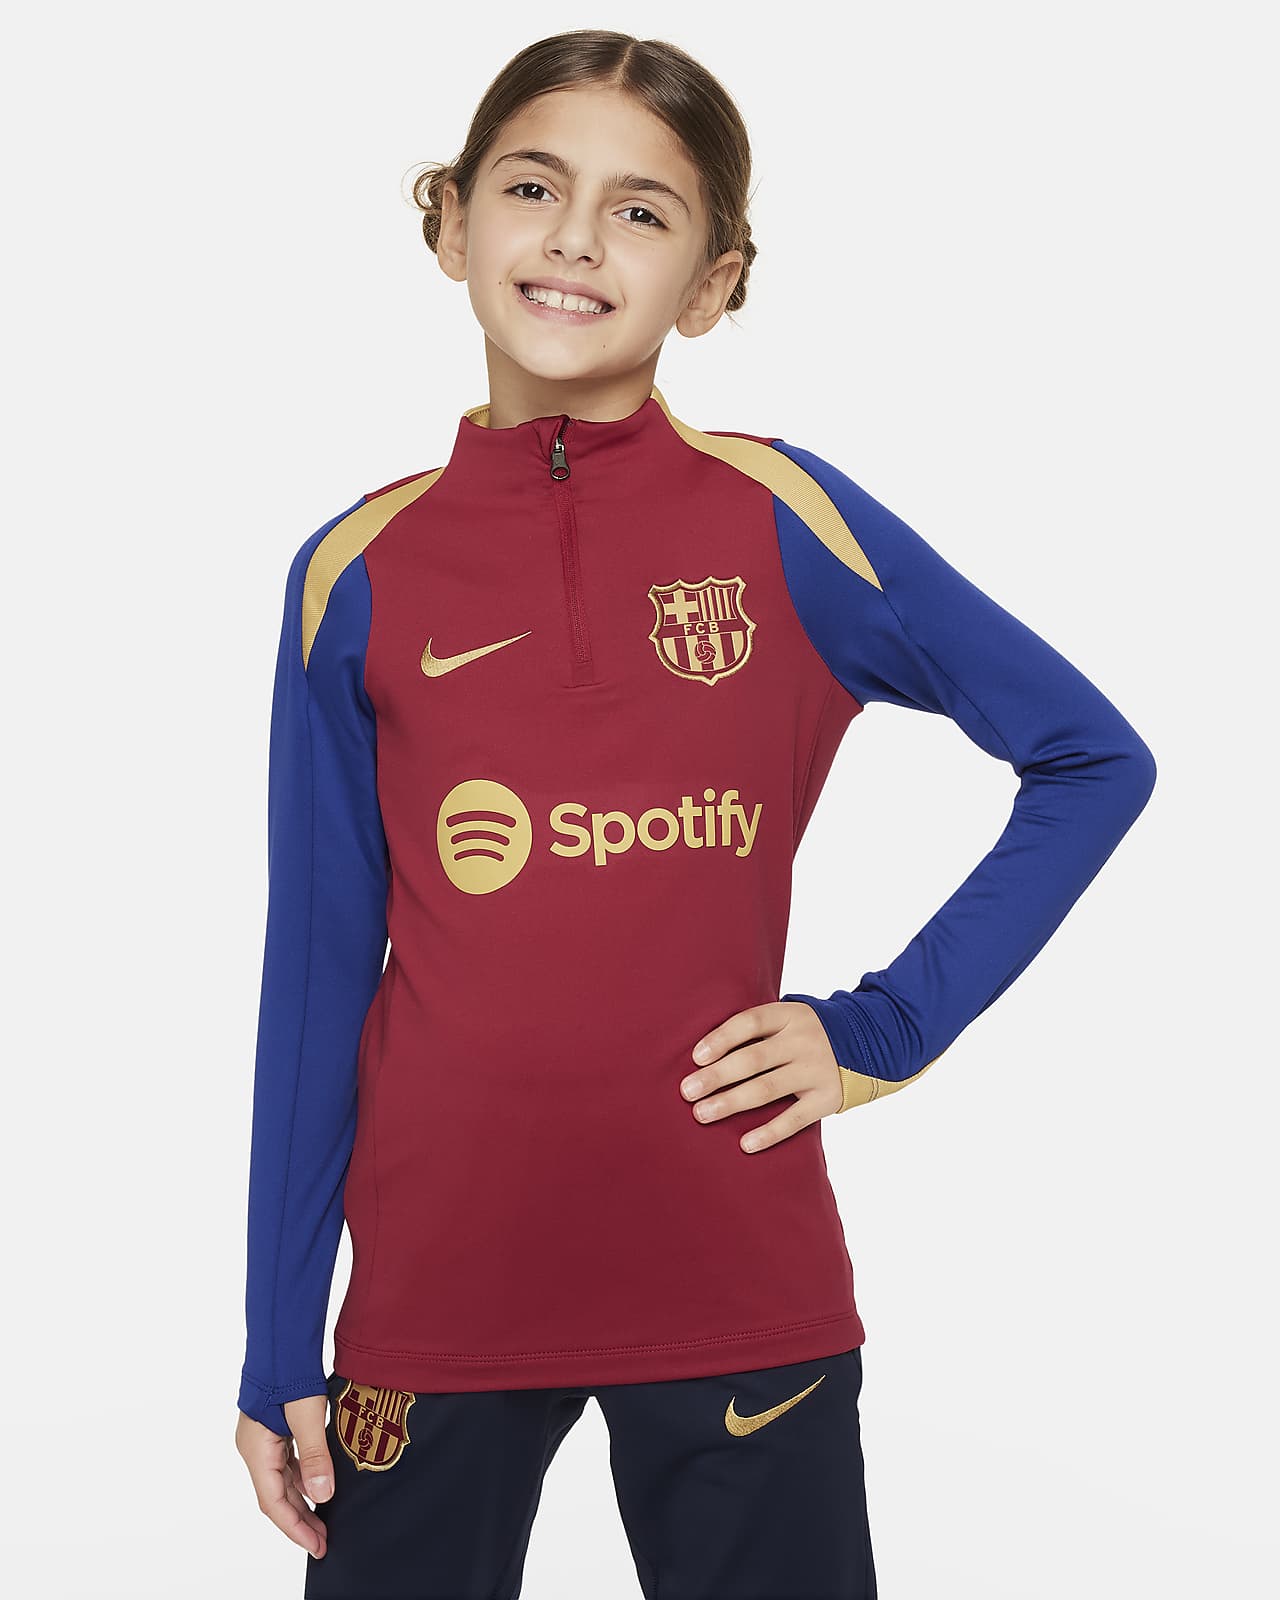 Ποδοσφαιρική μπλούζα προπόνησης Nike Dri-FIT Μπαρτσελόνα Strike για μεγάλα παιδιά